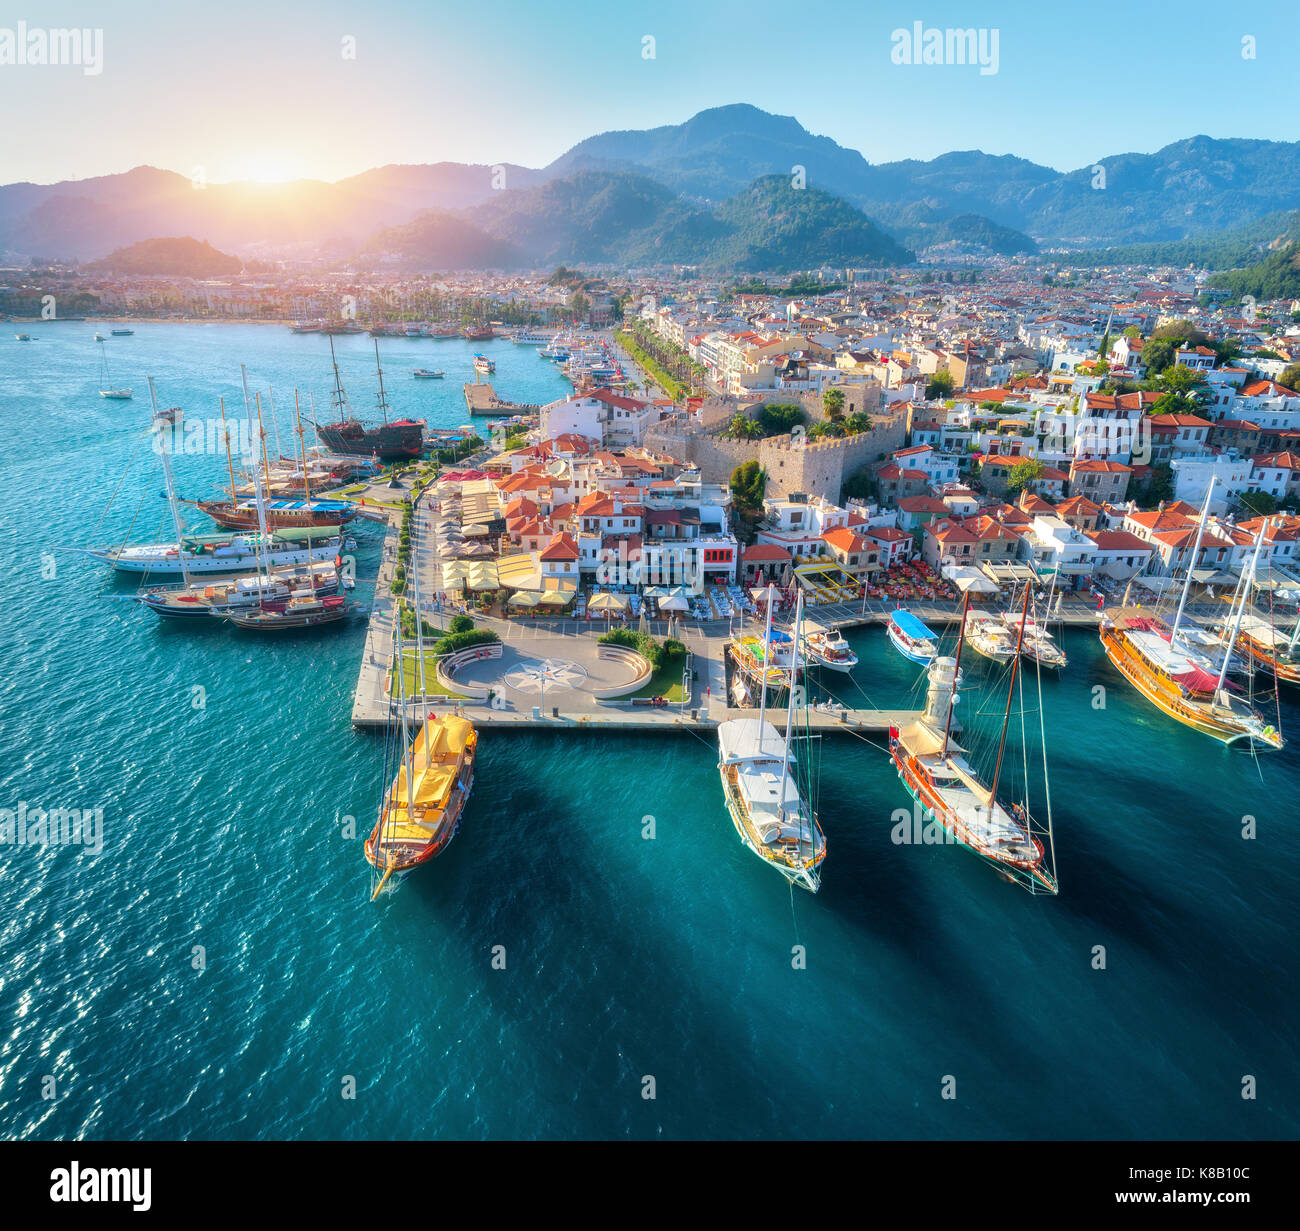 Vista aerea di barche e una splendida architettura al tramonto a Marmaris, Turchia. colorato paesaggio con barche in marina bay, mare, città, montagne. top Foto Stock